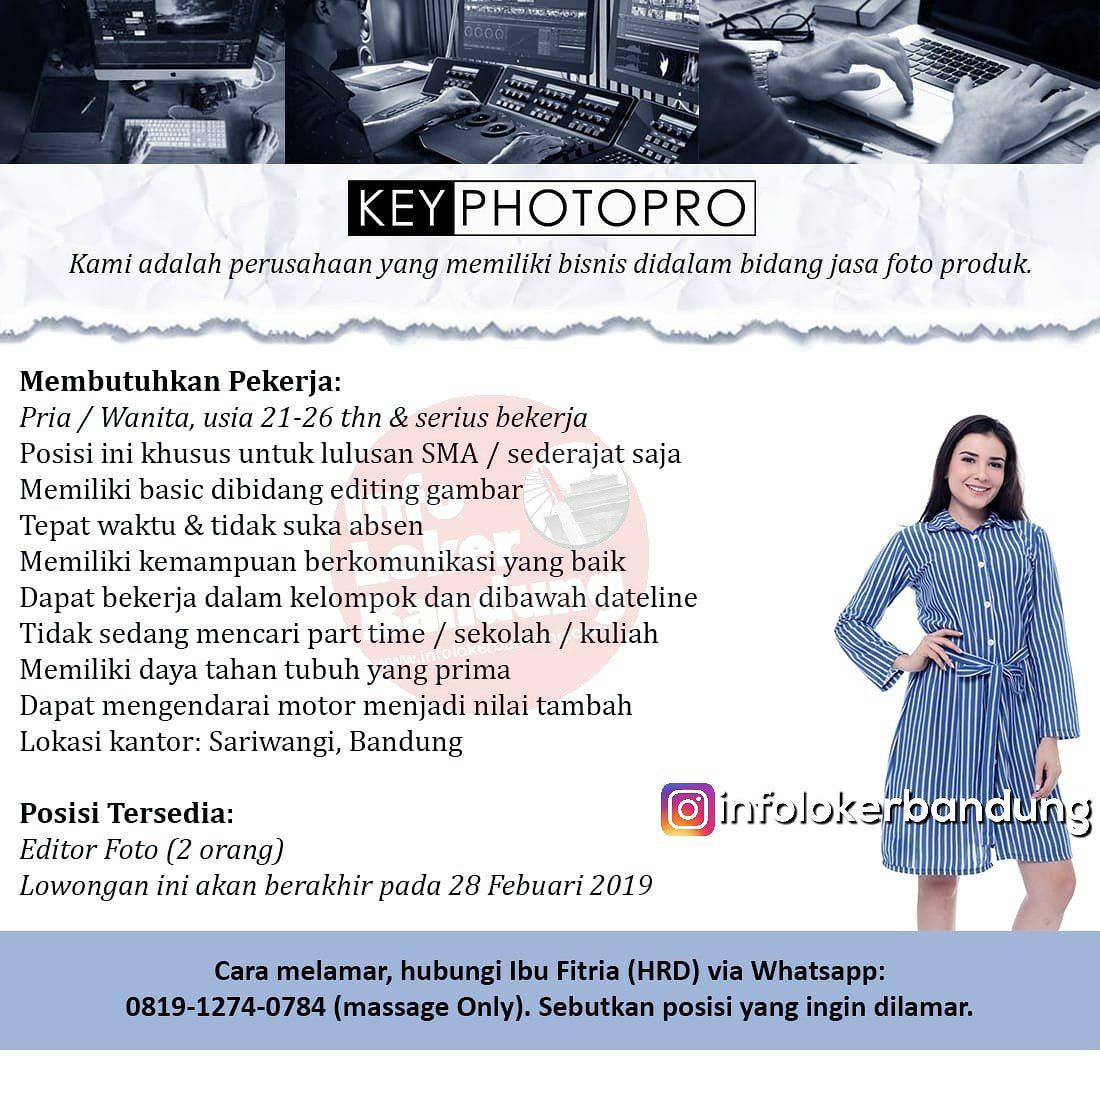 Lowongan Kerja Key Photopro Bandung Februari 2019